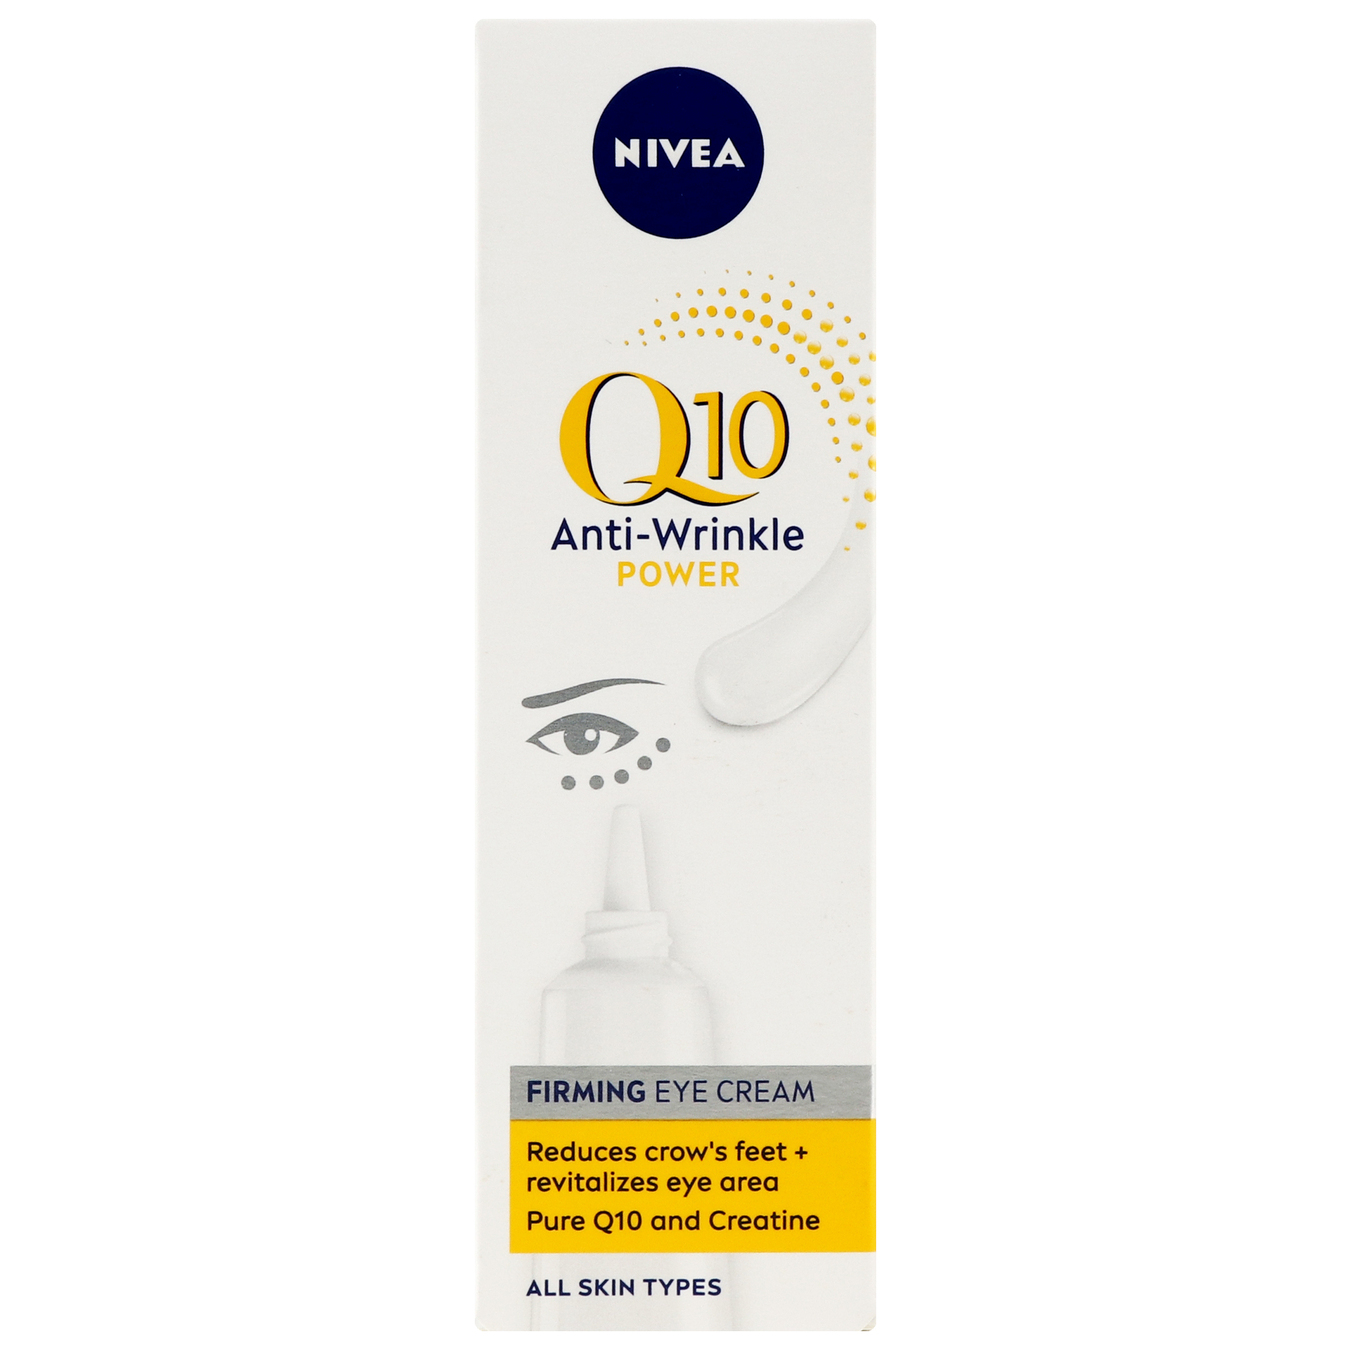 Anti-wrinkle face cream Nivea Q10 15ml